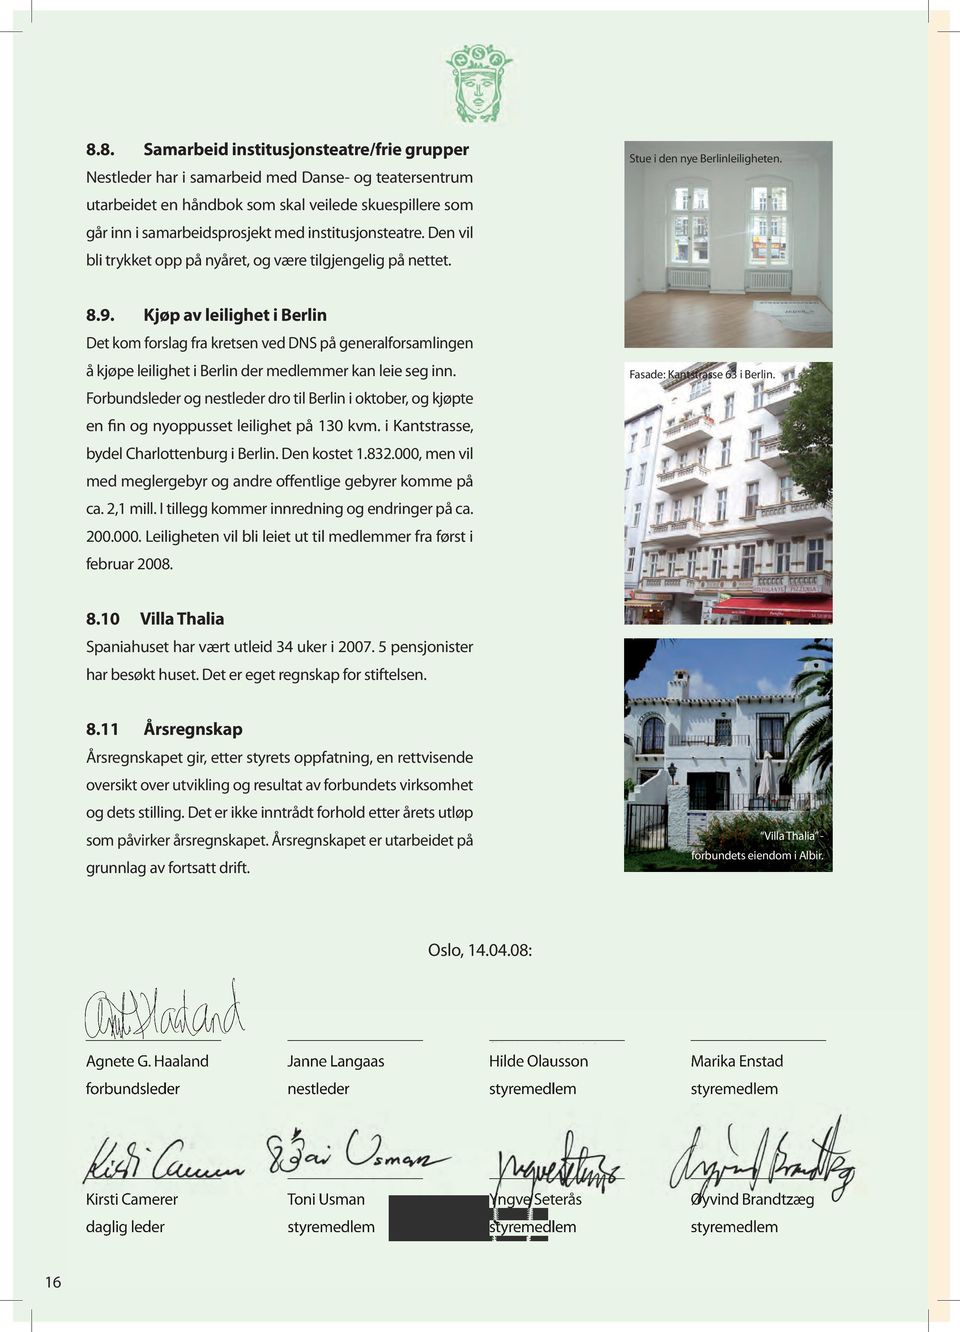 Kjøp av leilighet i Berlin Det kom forslag fra kretsen ved DNS på generalforsamlingen å kjøpe leilighet i Berlin der medlemmer kan leie seg inn.